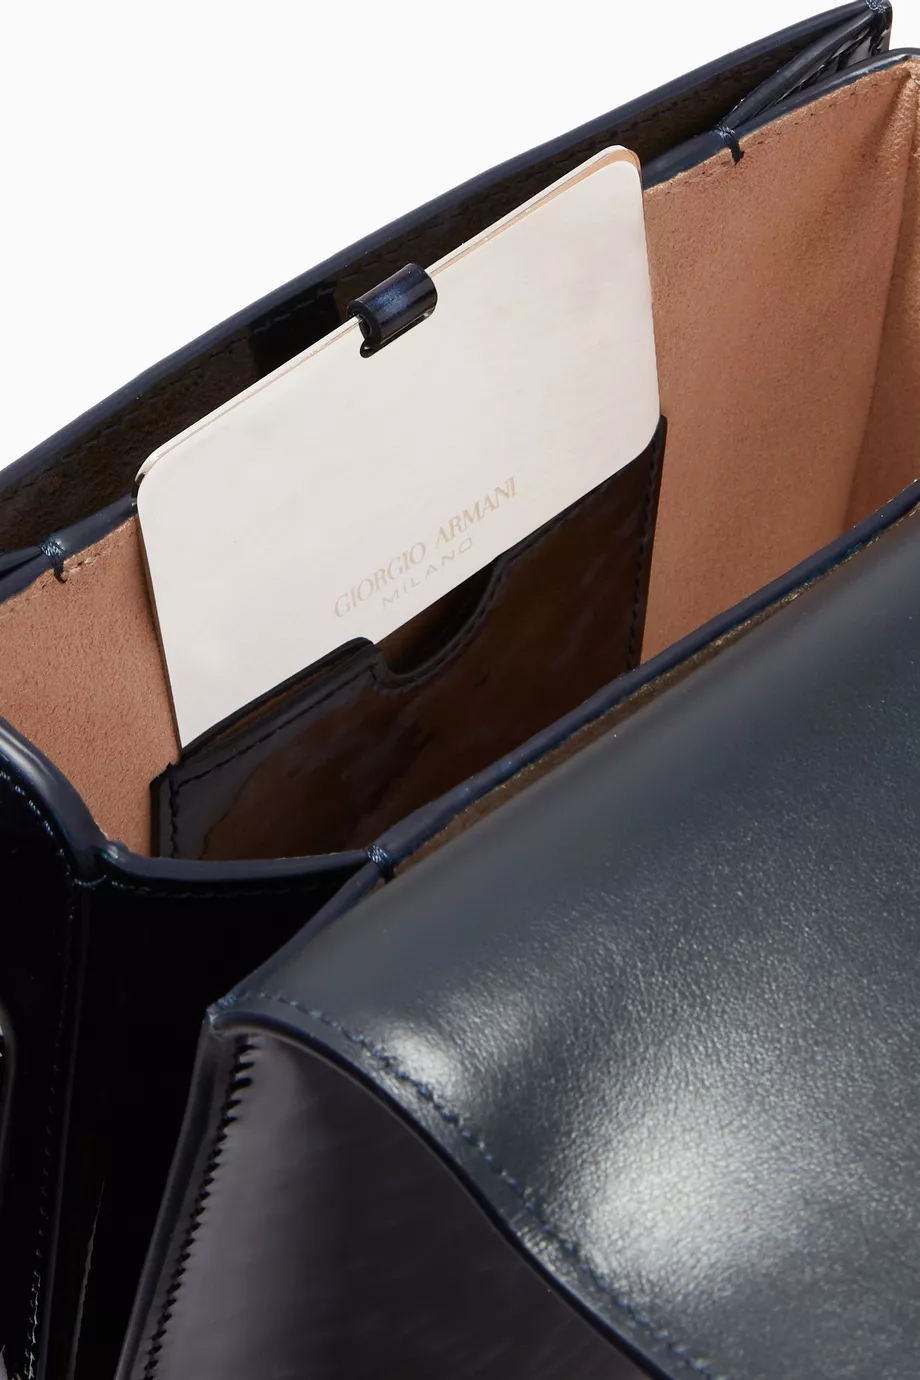 Small la Prima bag in tortoiseshell-design leather